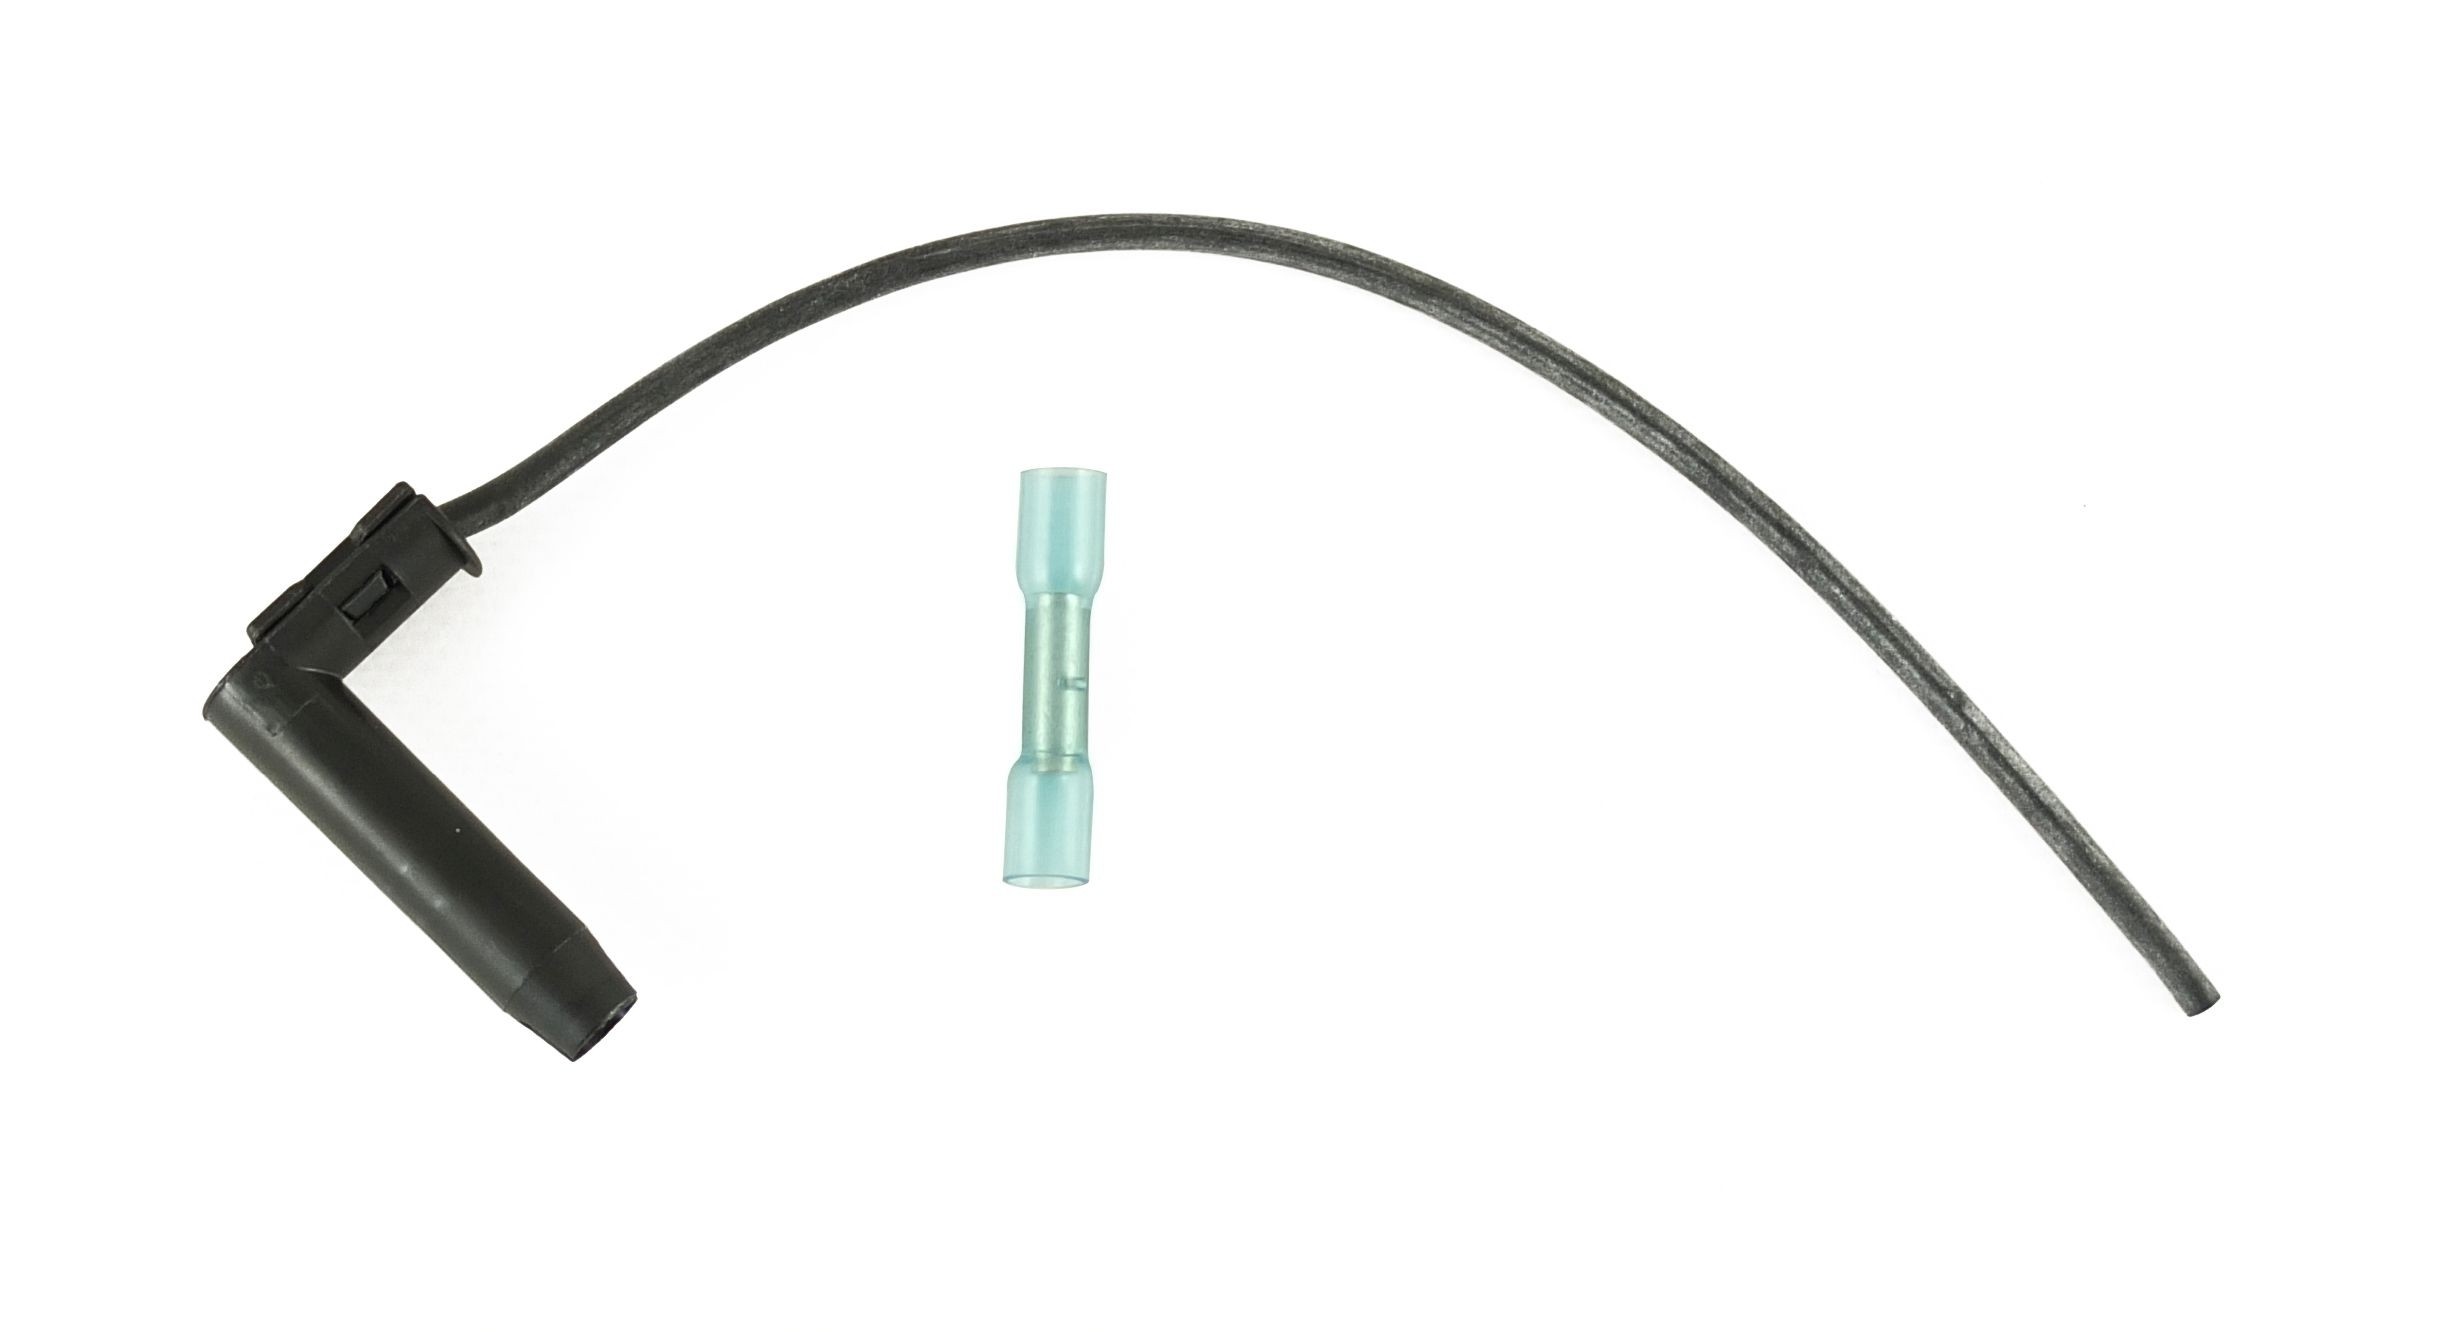 Reparatursatz Kabel Stecker Glühkerze Glühkerzenstecker für Fiat, 13,90 €